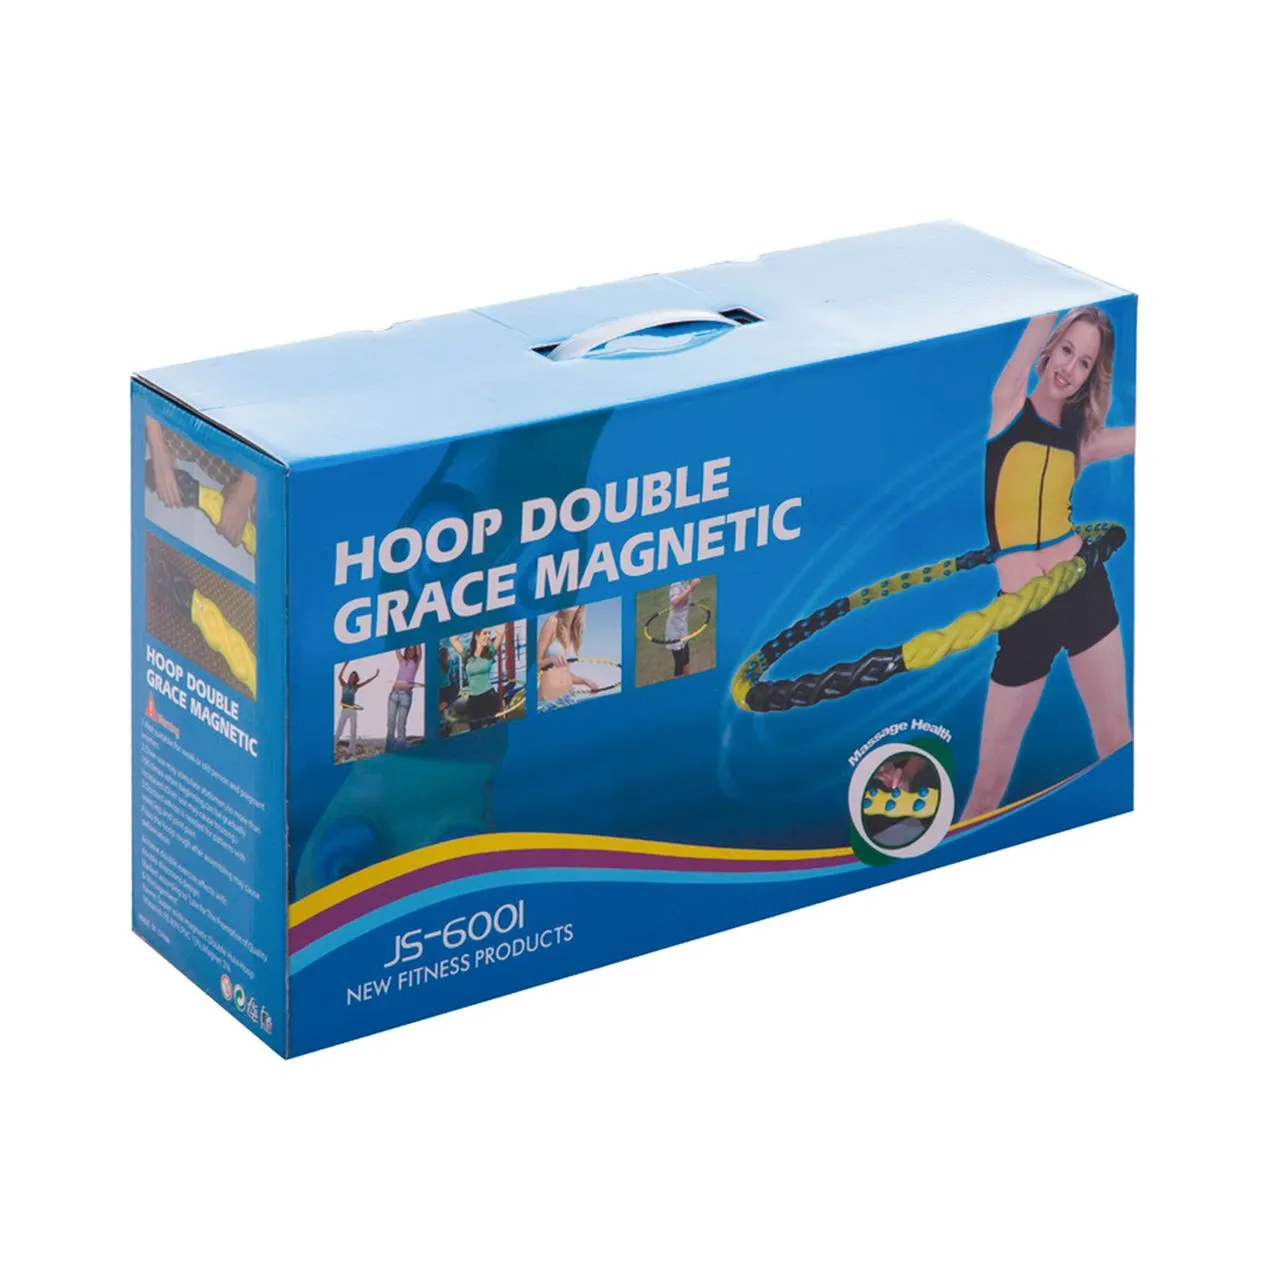 Hoop Double Grace Magnetic, JS-6001, 1,7 kg#5